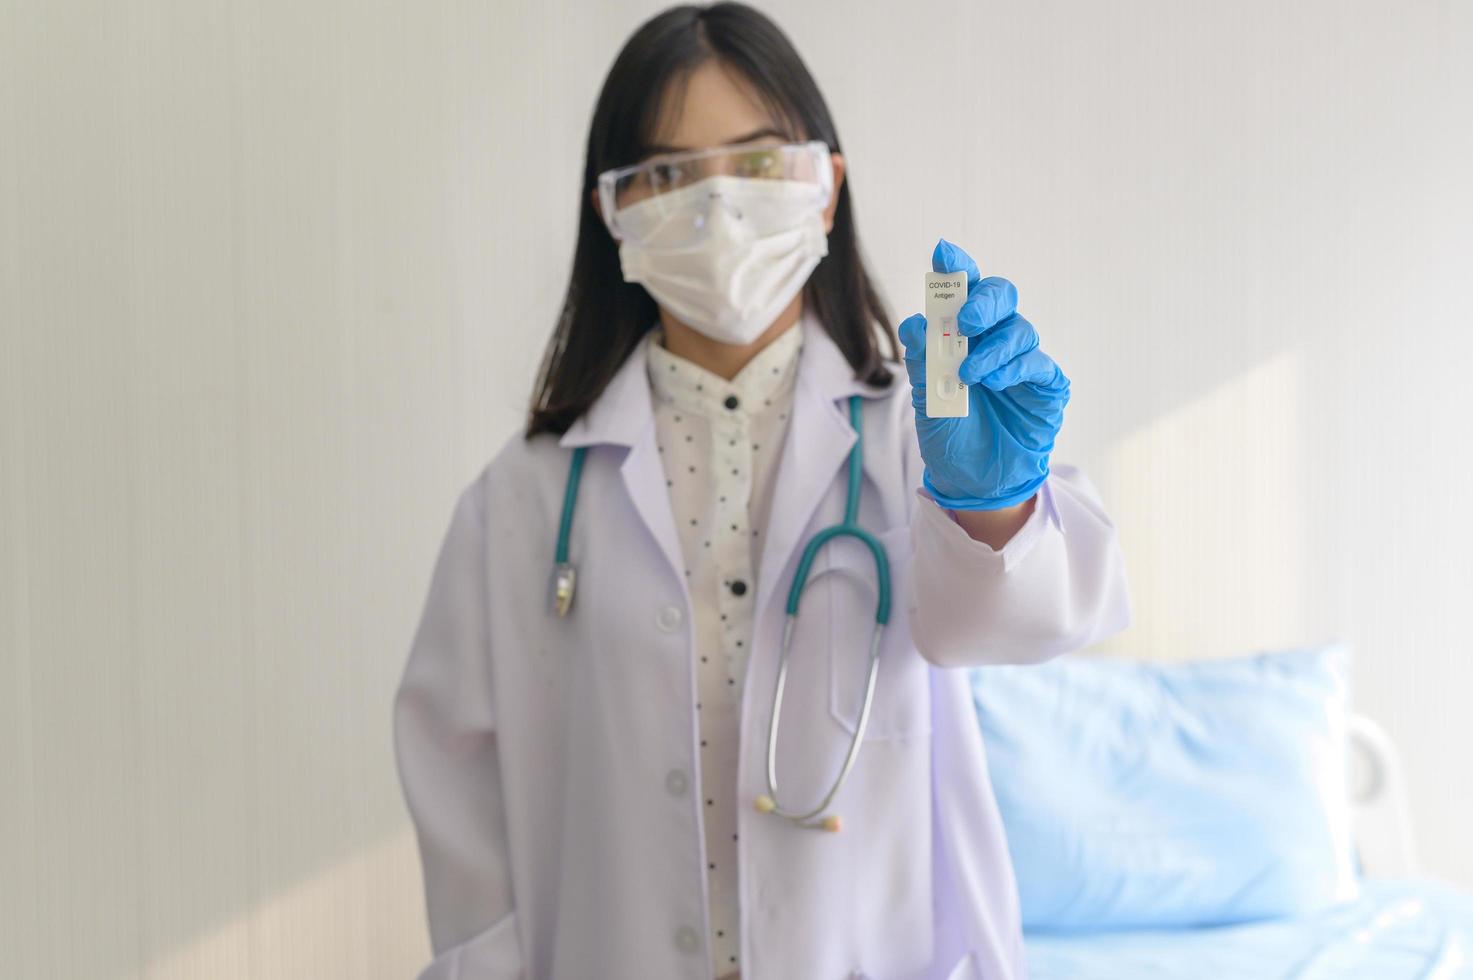 jovem médica segurando kit atk no hospital, covid19 e conceito de pandemia foto